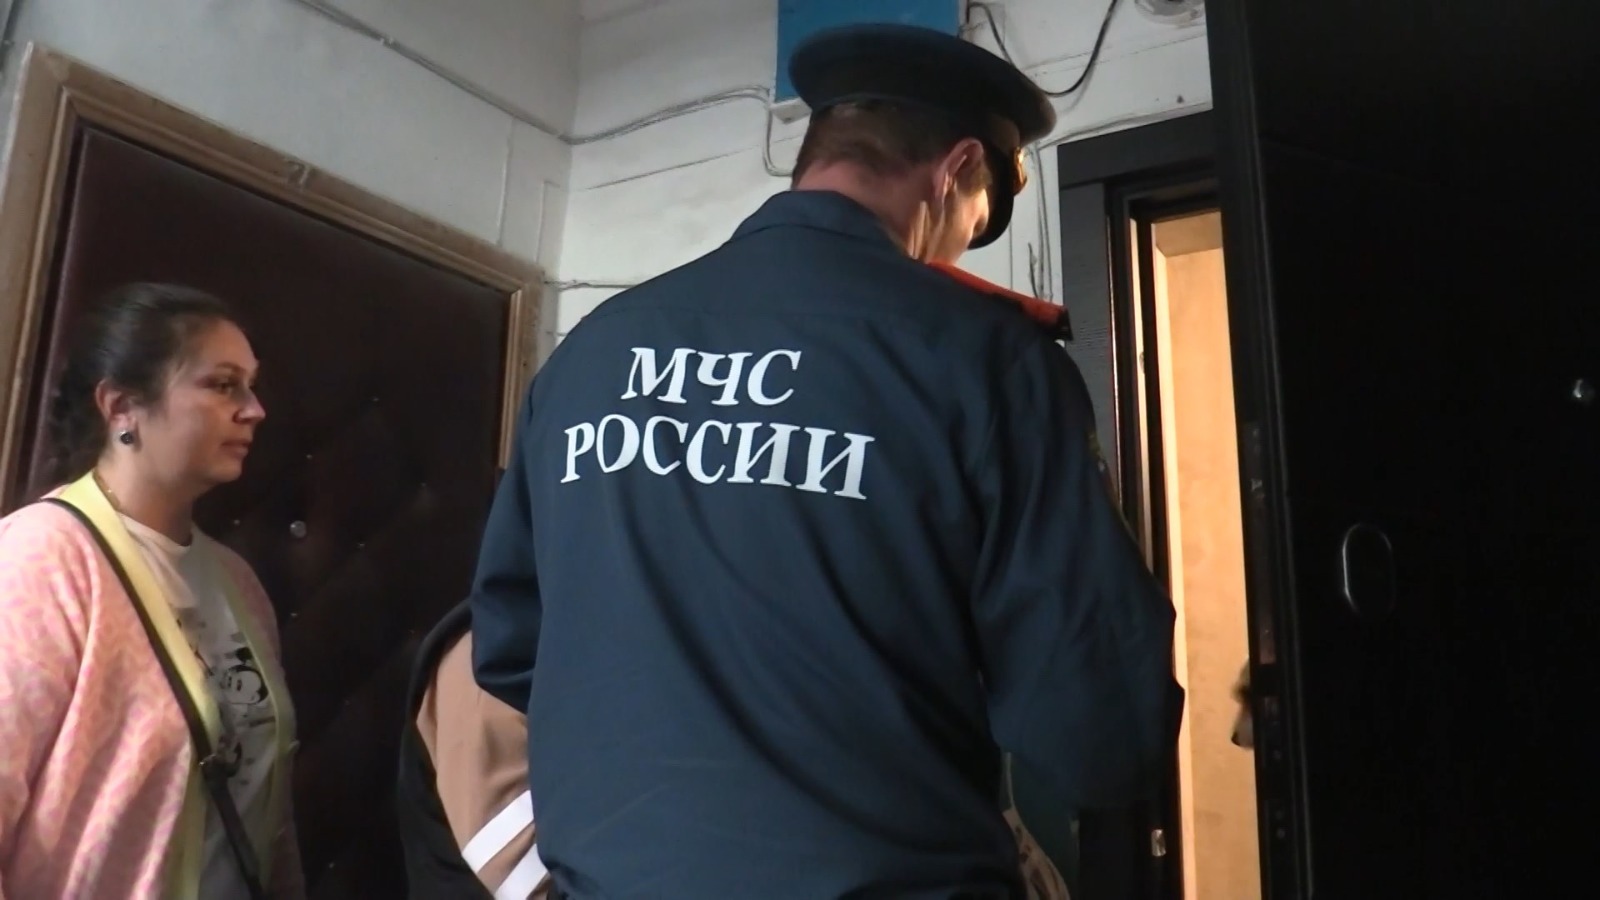 Многодетным семьям в Костроме выдают пожарные извещатели